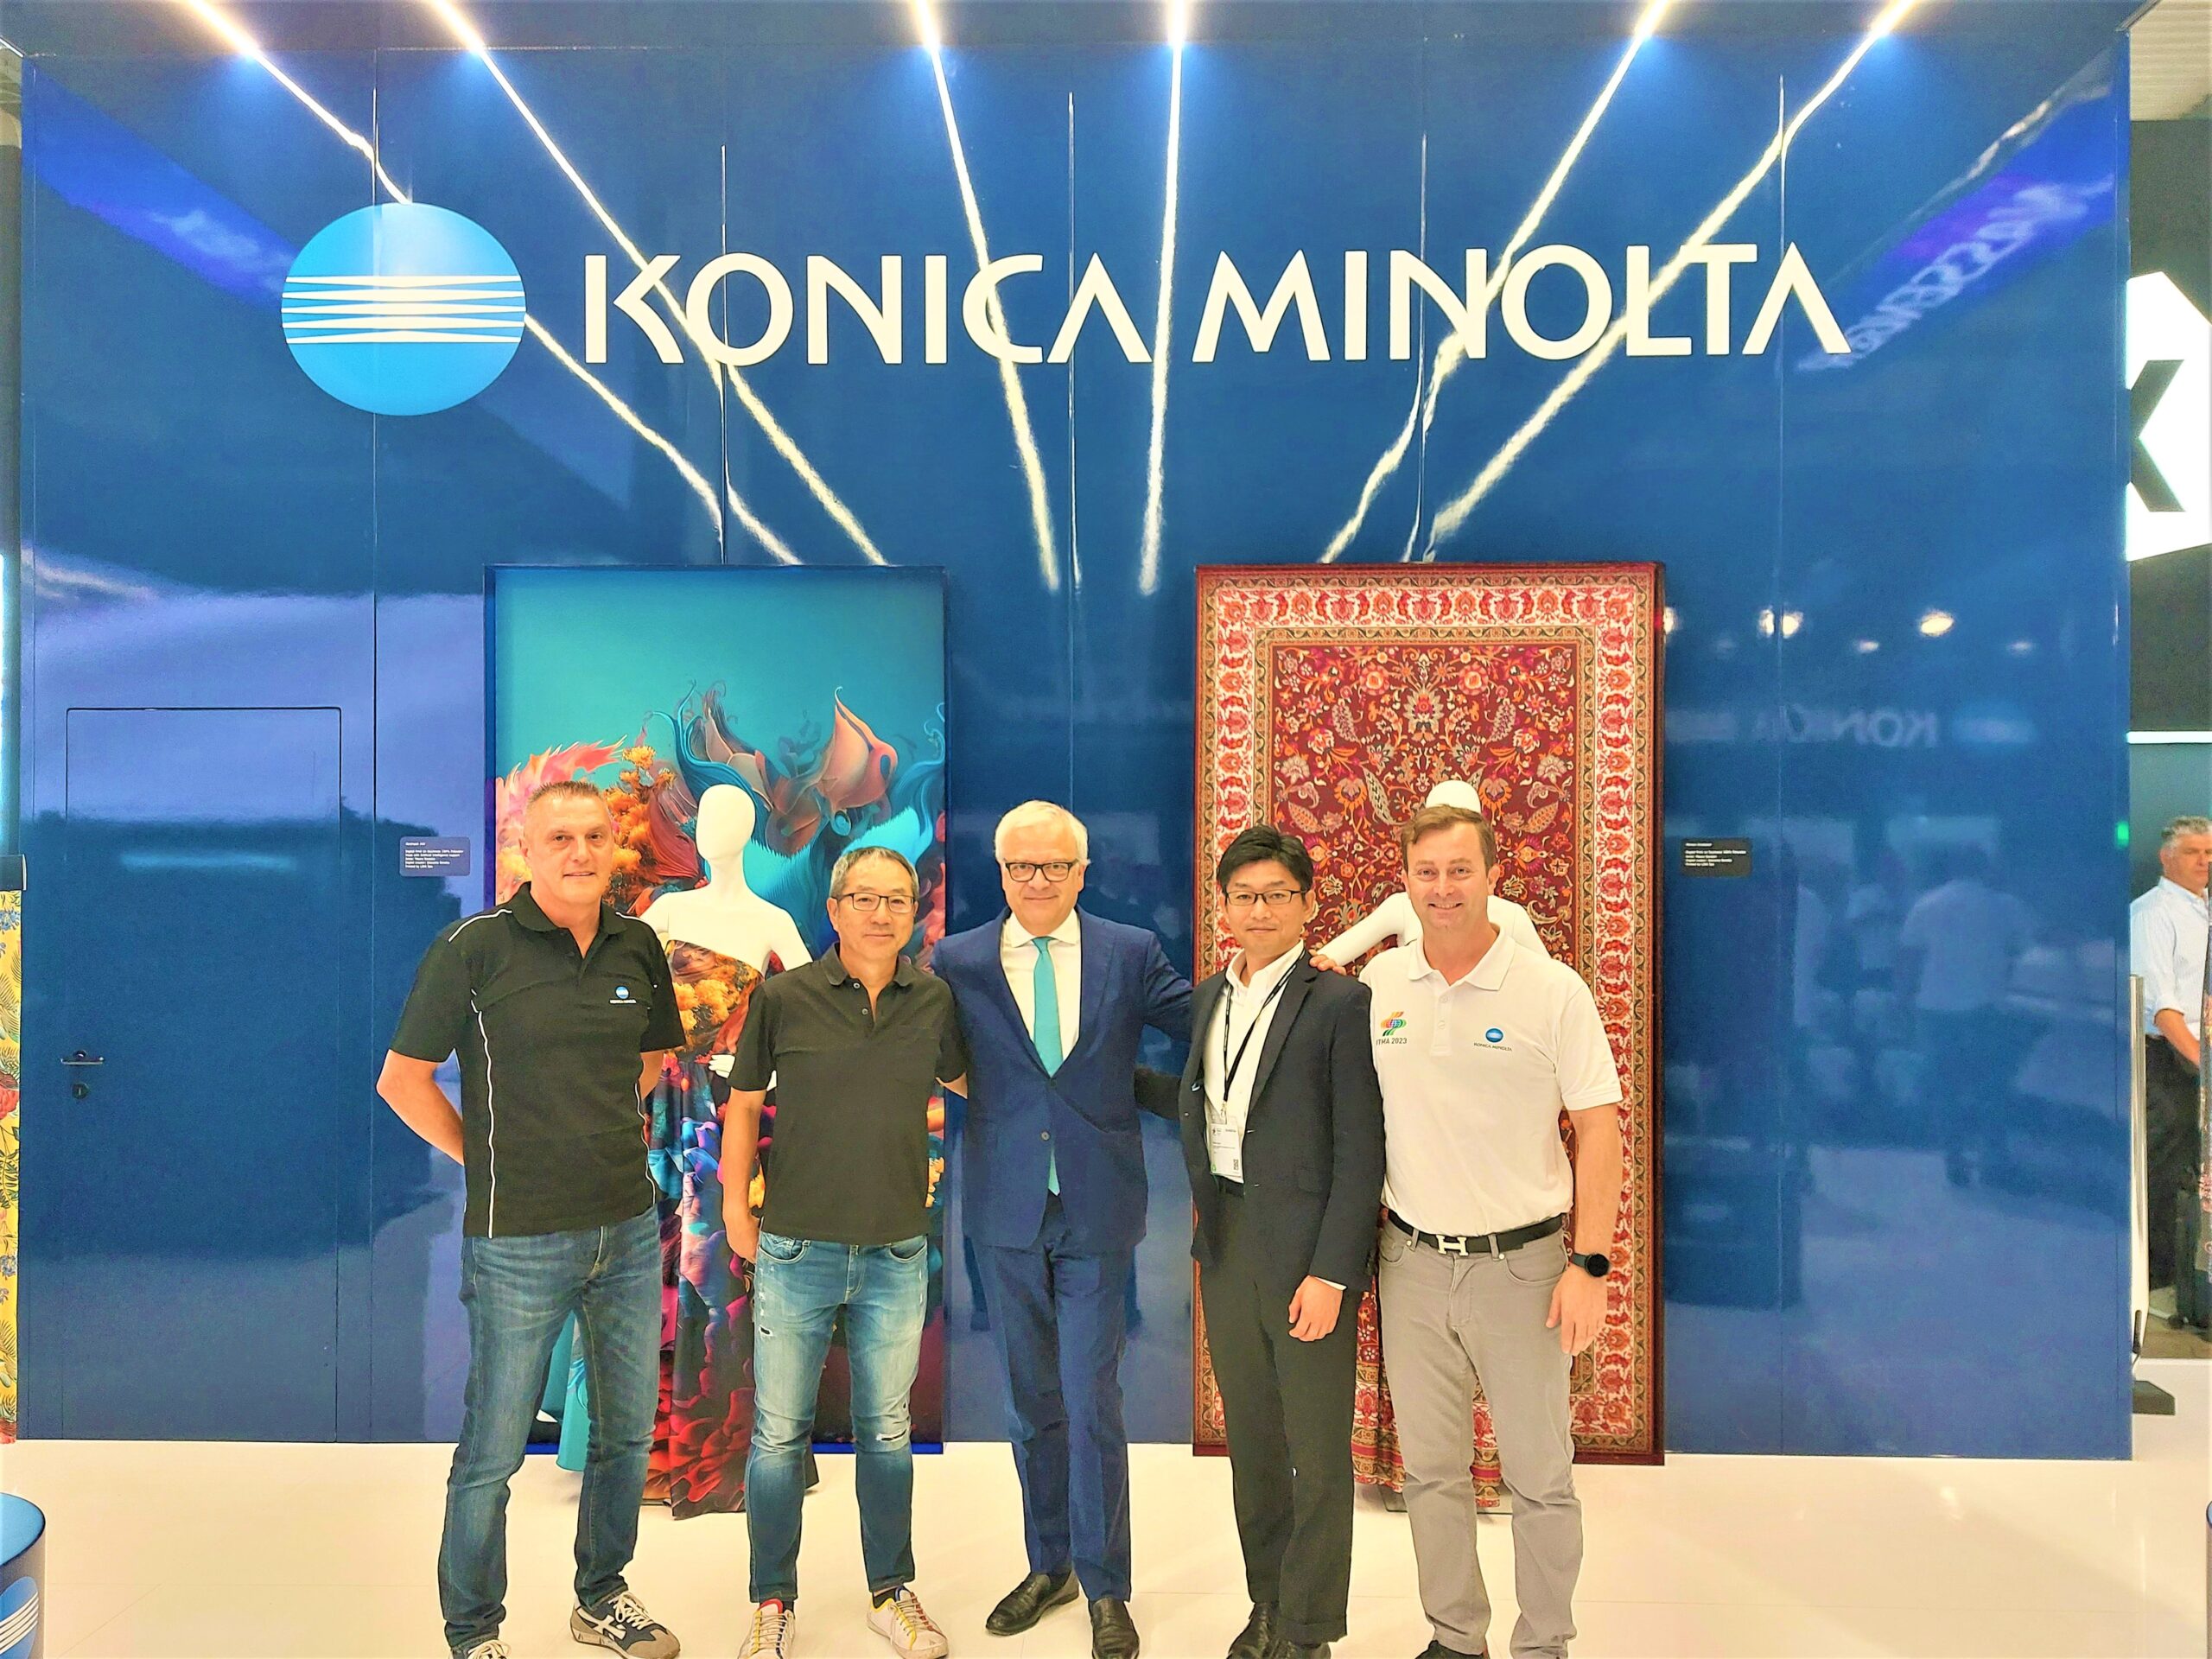 Gentili Mosconi e Konica Minolta siglano una partnership esclusiva per lo sviluppo di nuove tecnologie di stampa digitale su tessuto